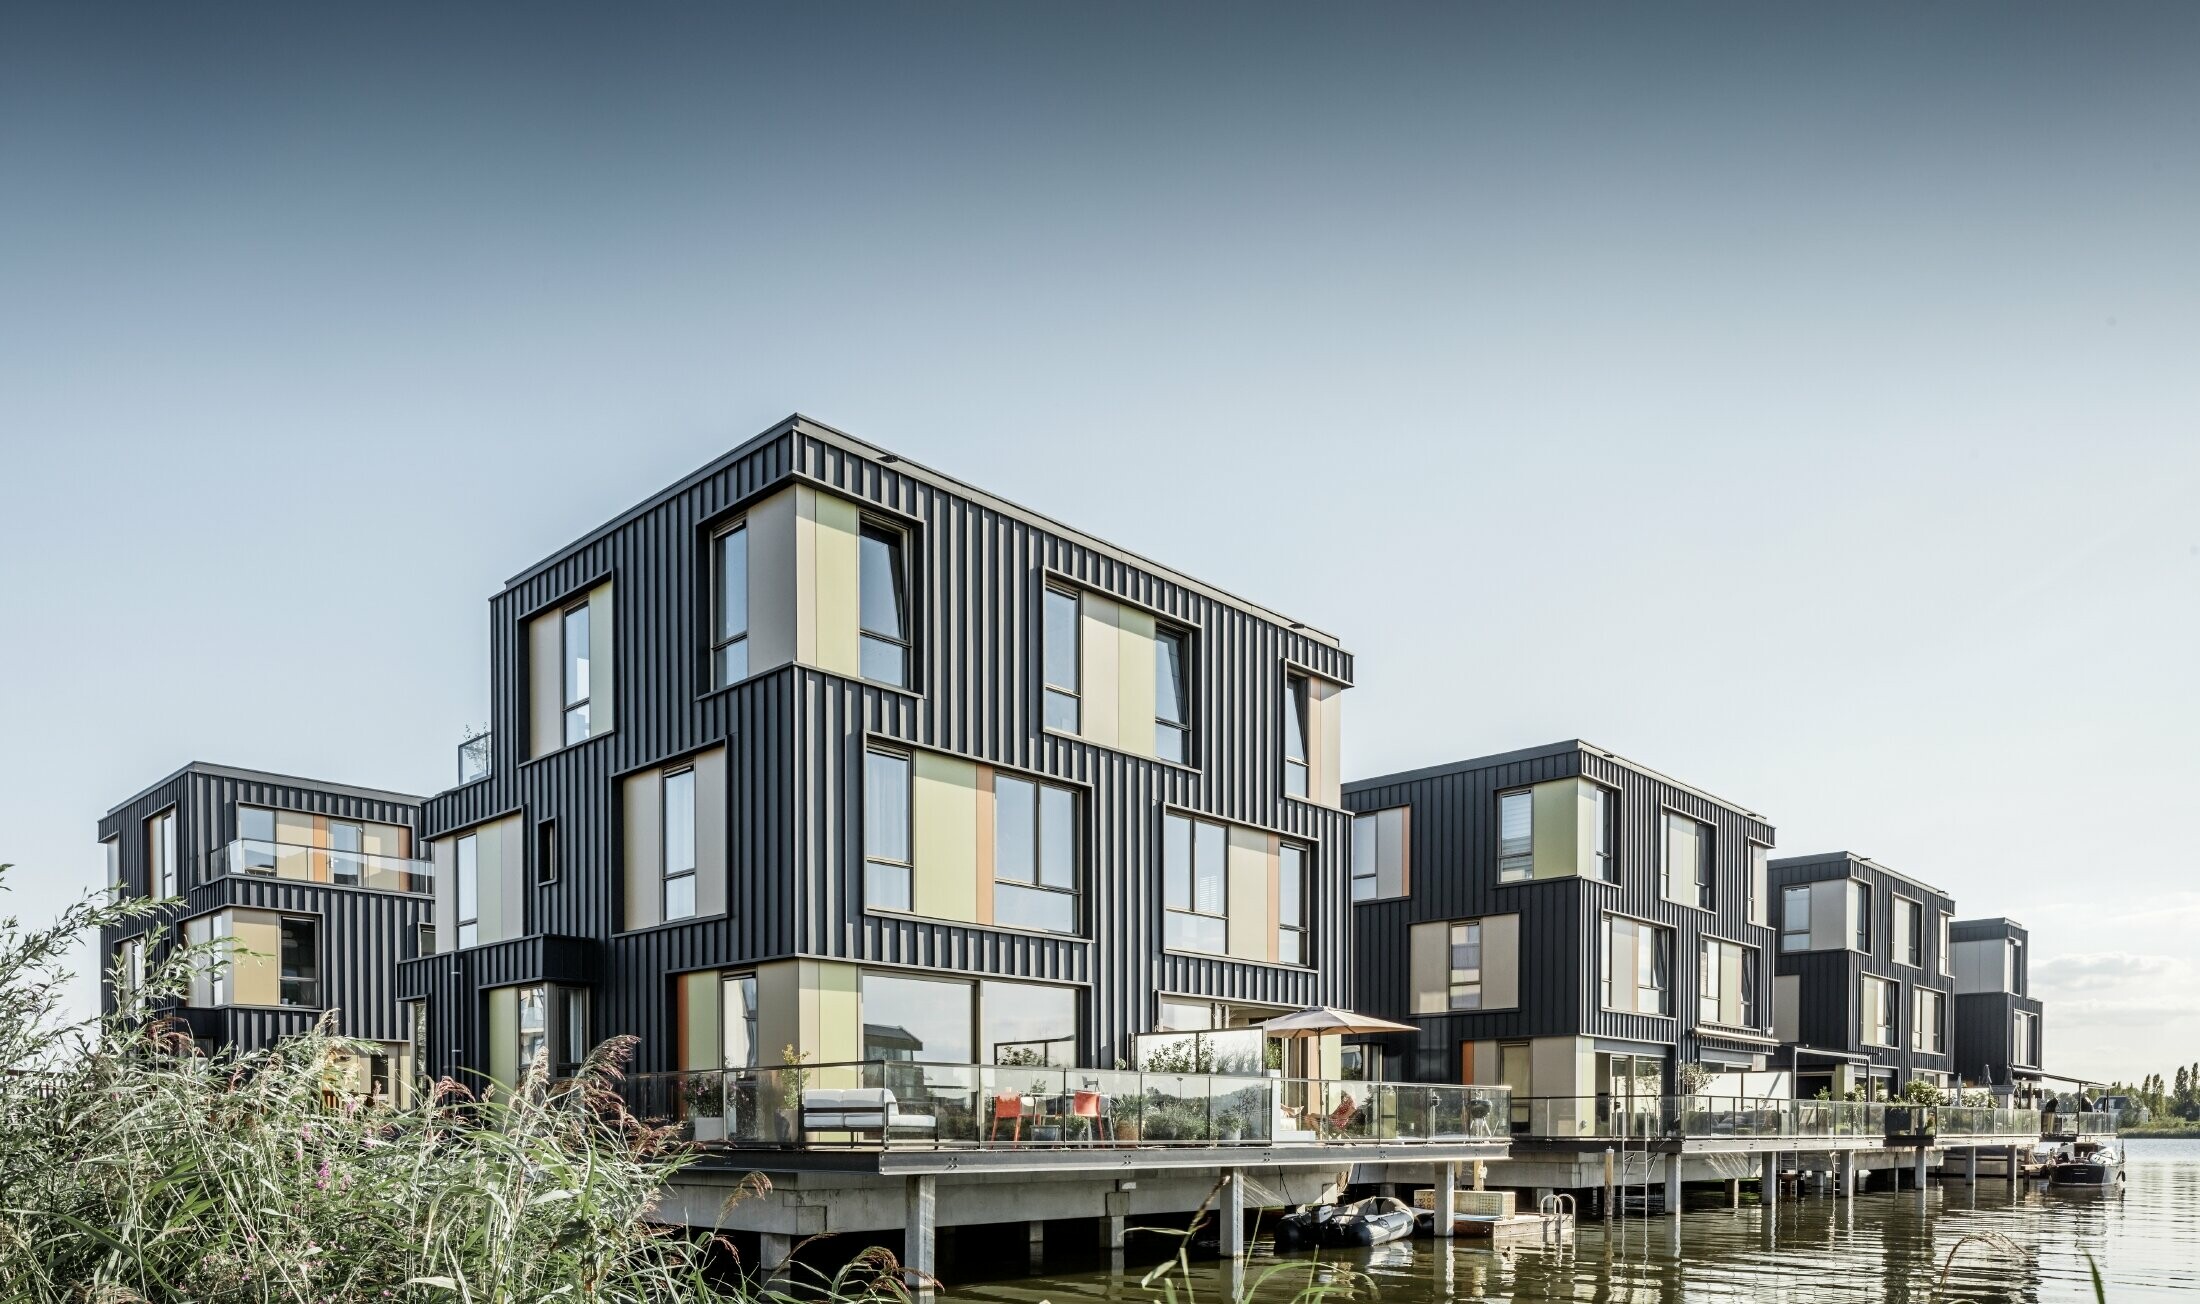 Nieuwe woonwijk met twee-onder-een-kapwoningen aan het water in Amsterdam. De huizen zijn bekleed met Prefalz van PREFA in P.10 antraciet.